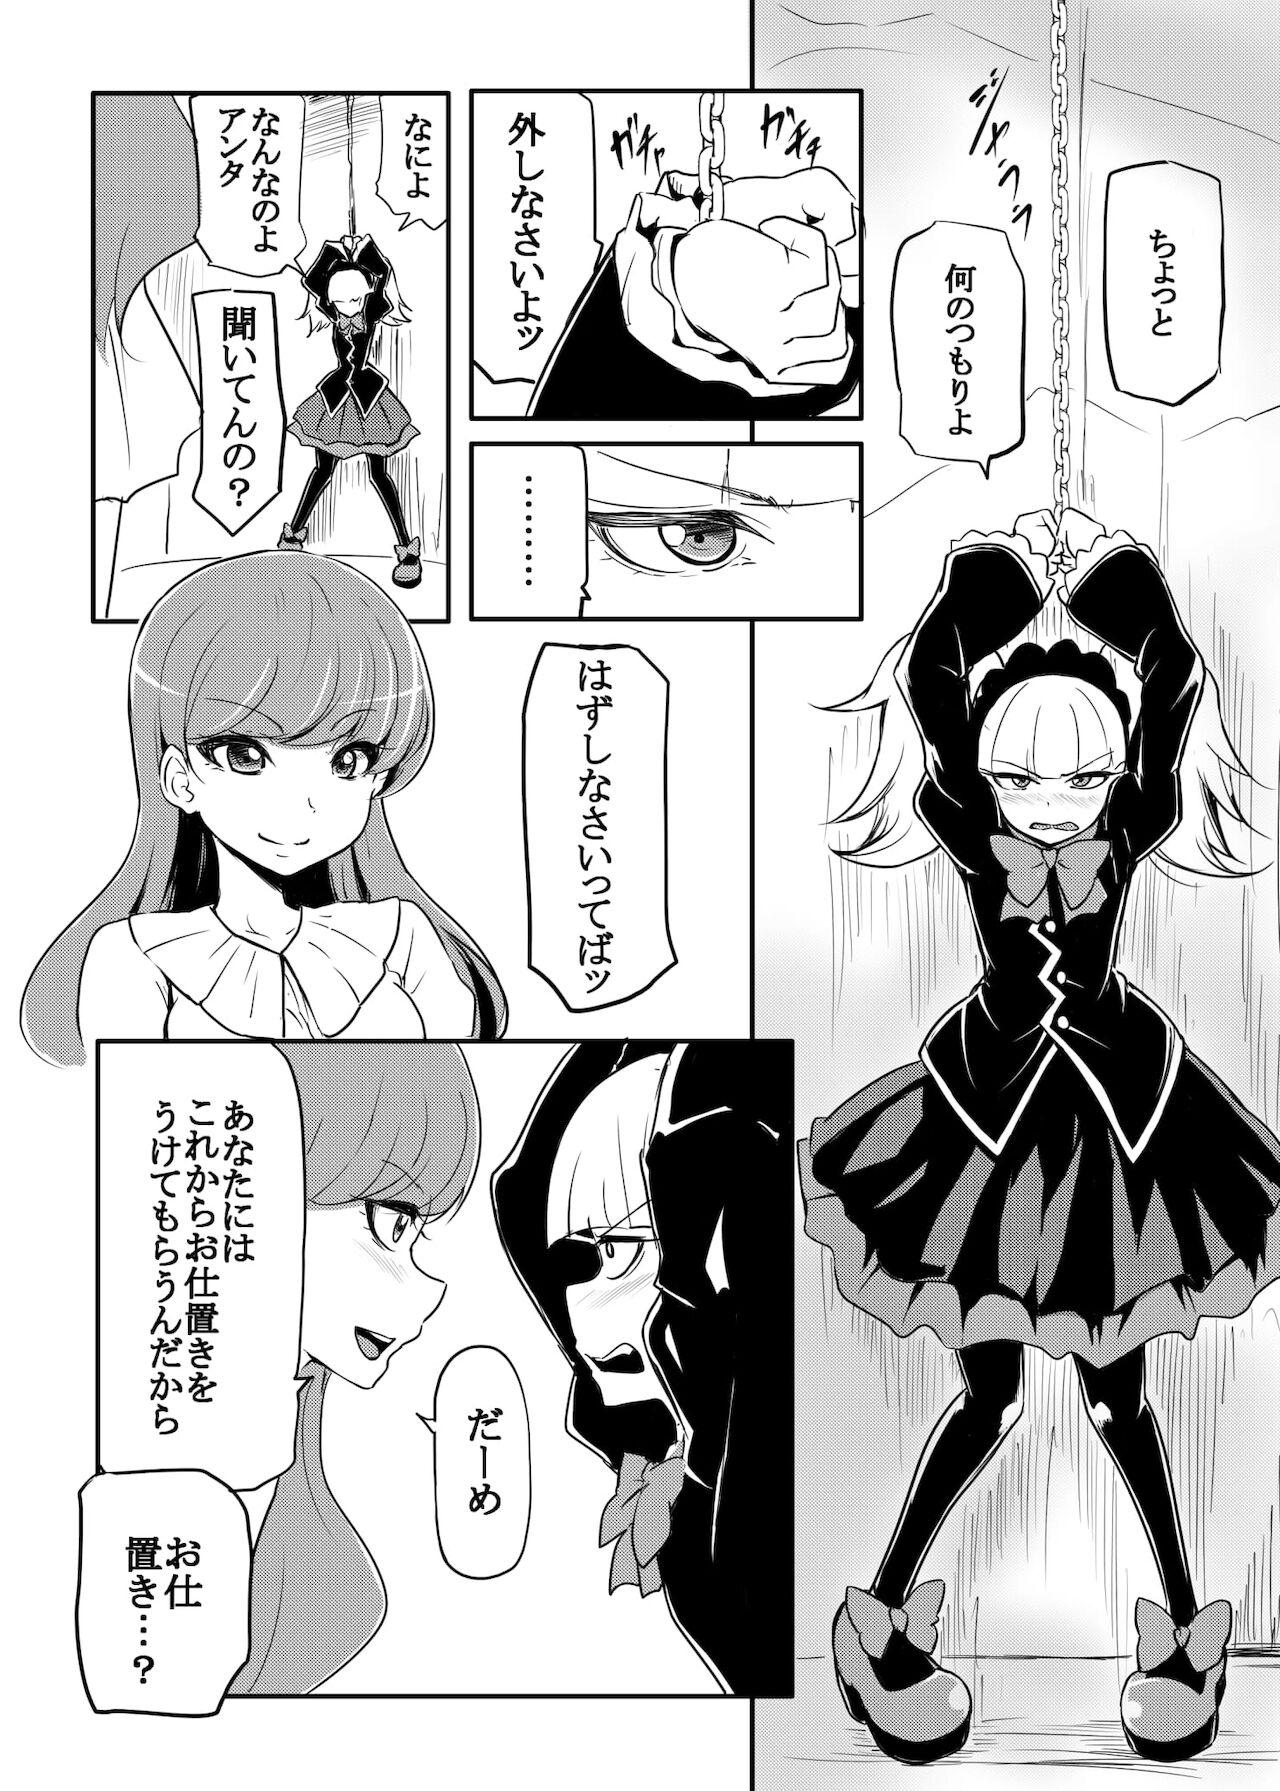 Amadora master of puppets - Kirakira precure a la mode Gays - Page 4